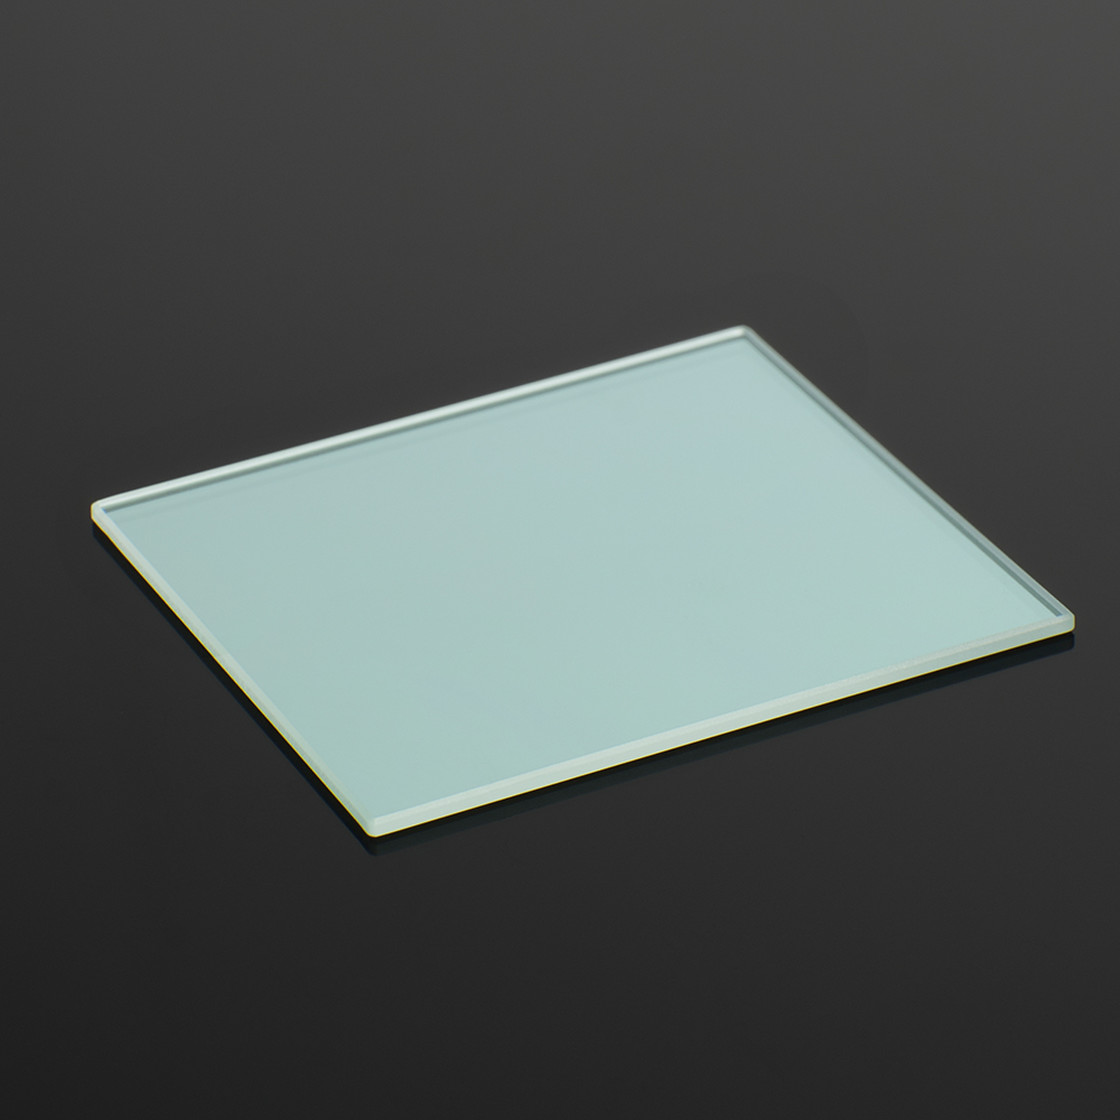 Teildurchlässiger Vorderflächen-Glasspiegel, 80 x 100 mm